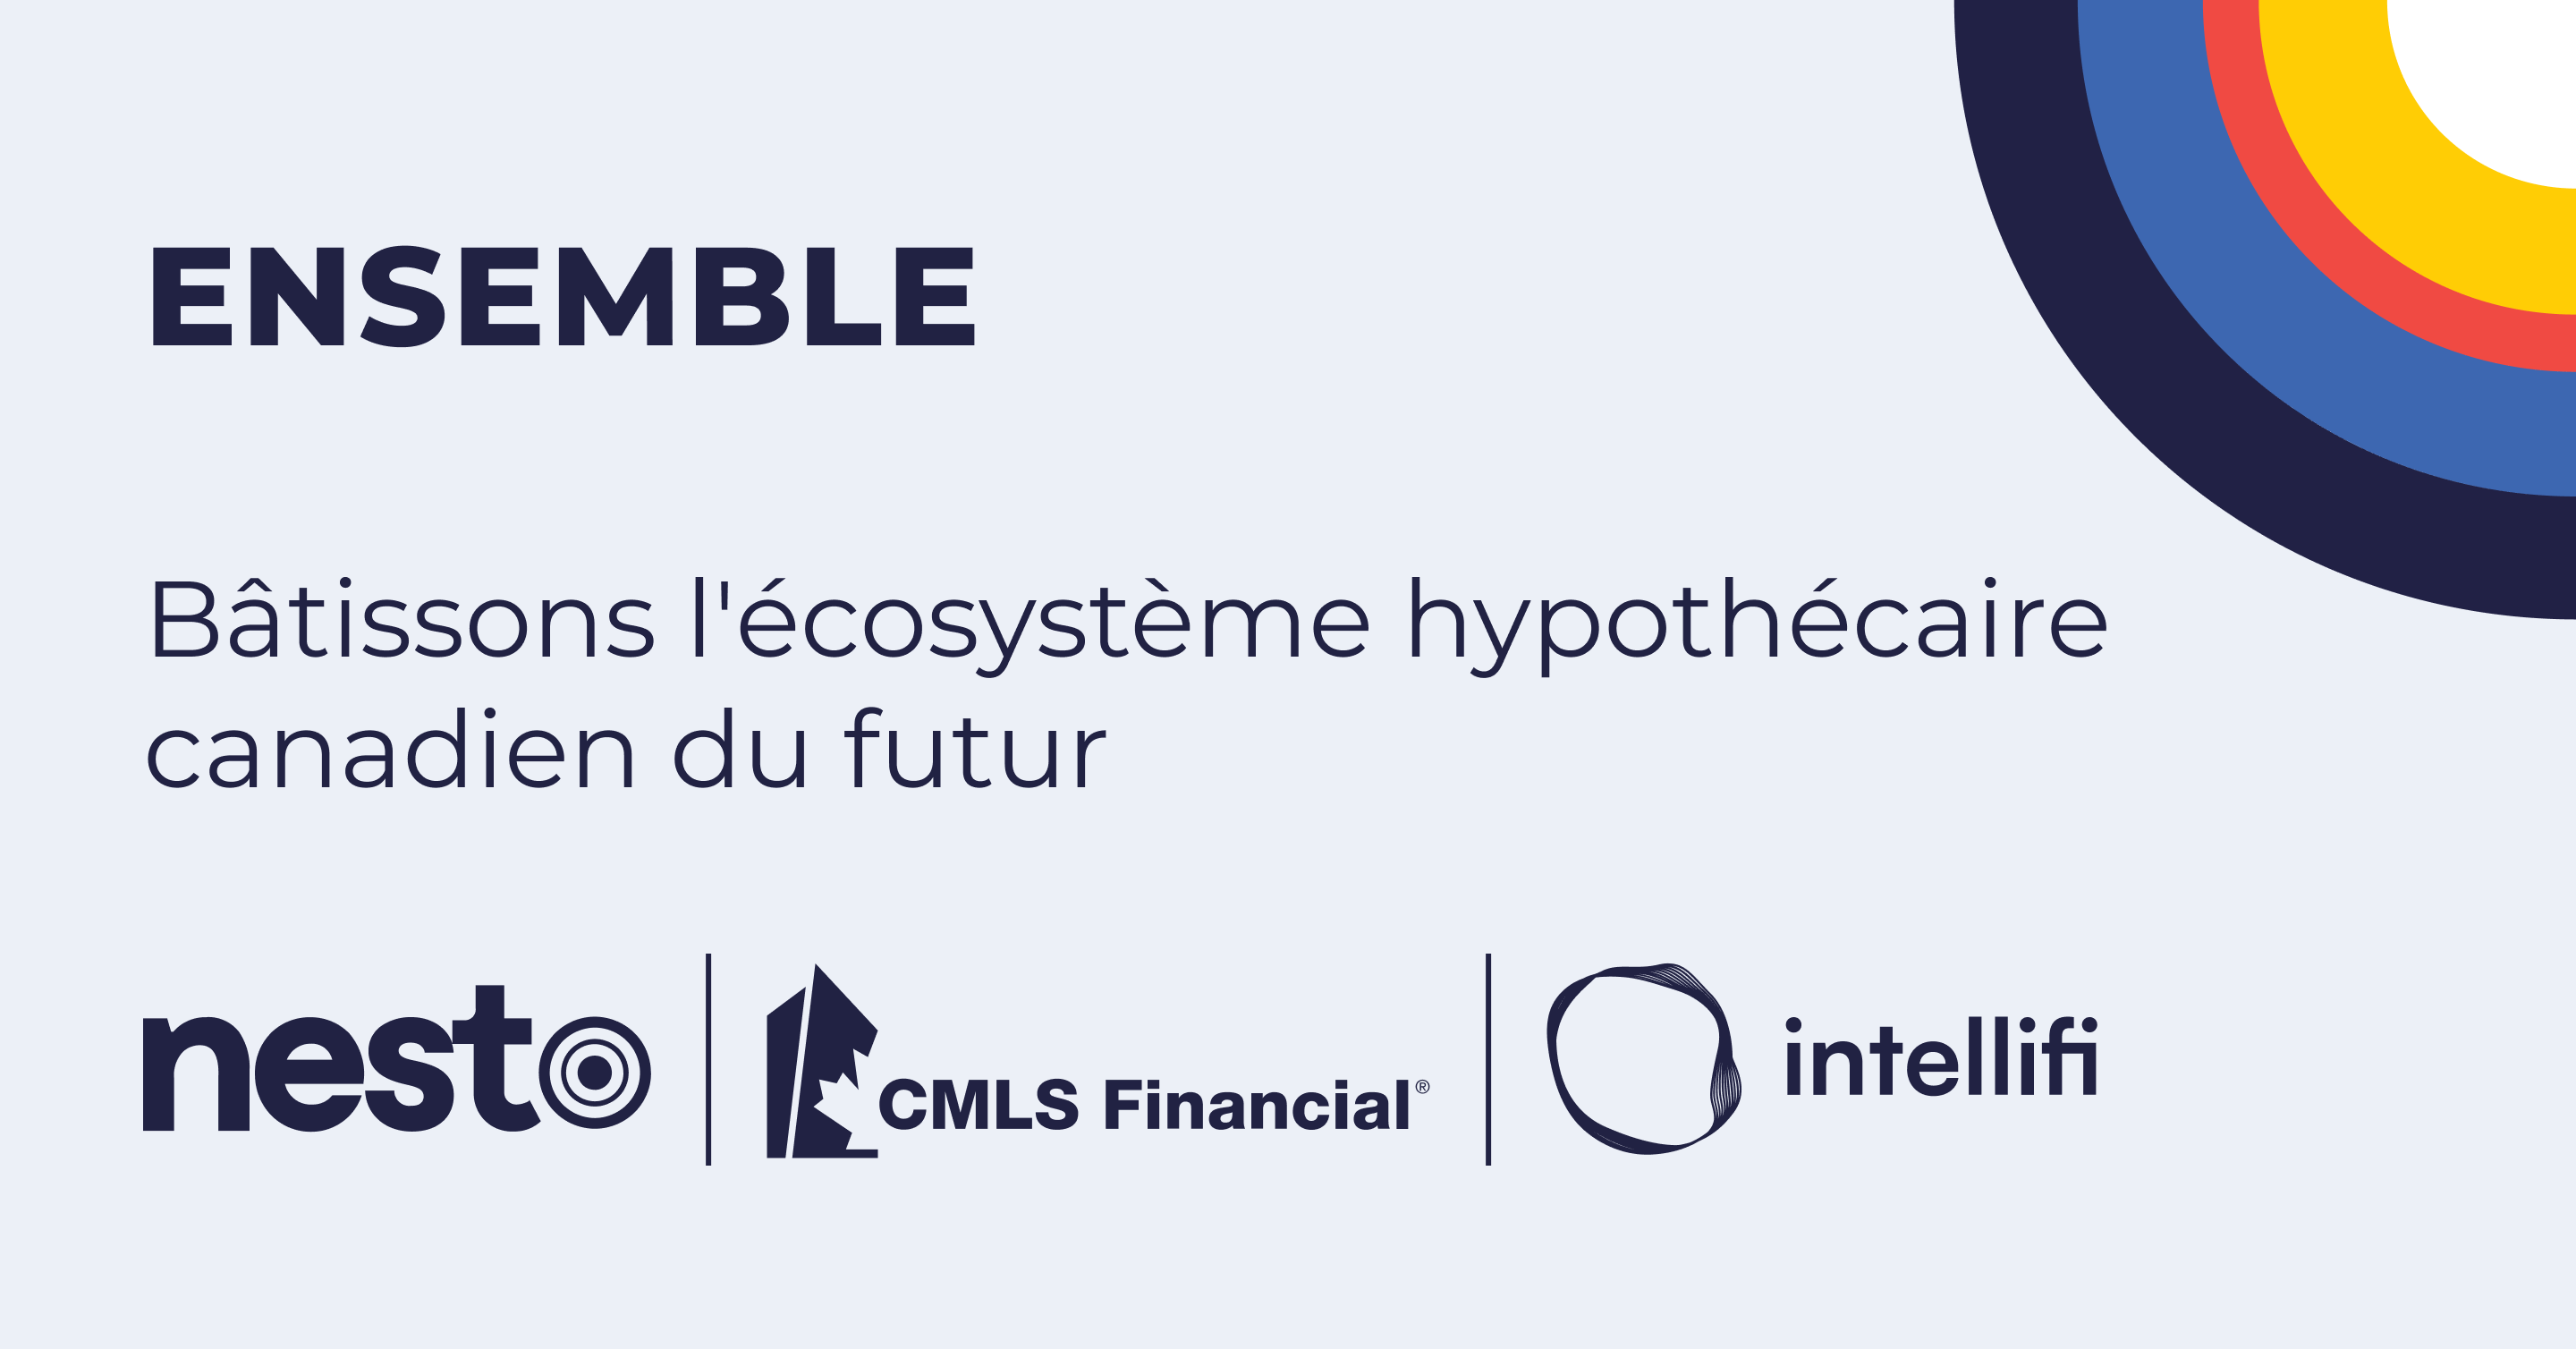  nesto et le Groupe CMLS unissent leurs forces pour bâtir l'écosystème hypothécaire canadien du futur